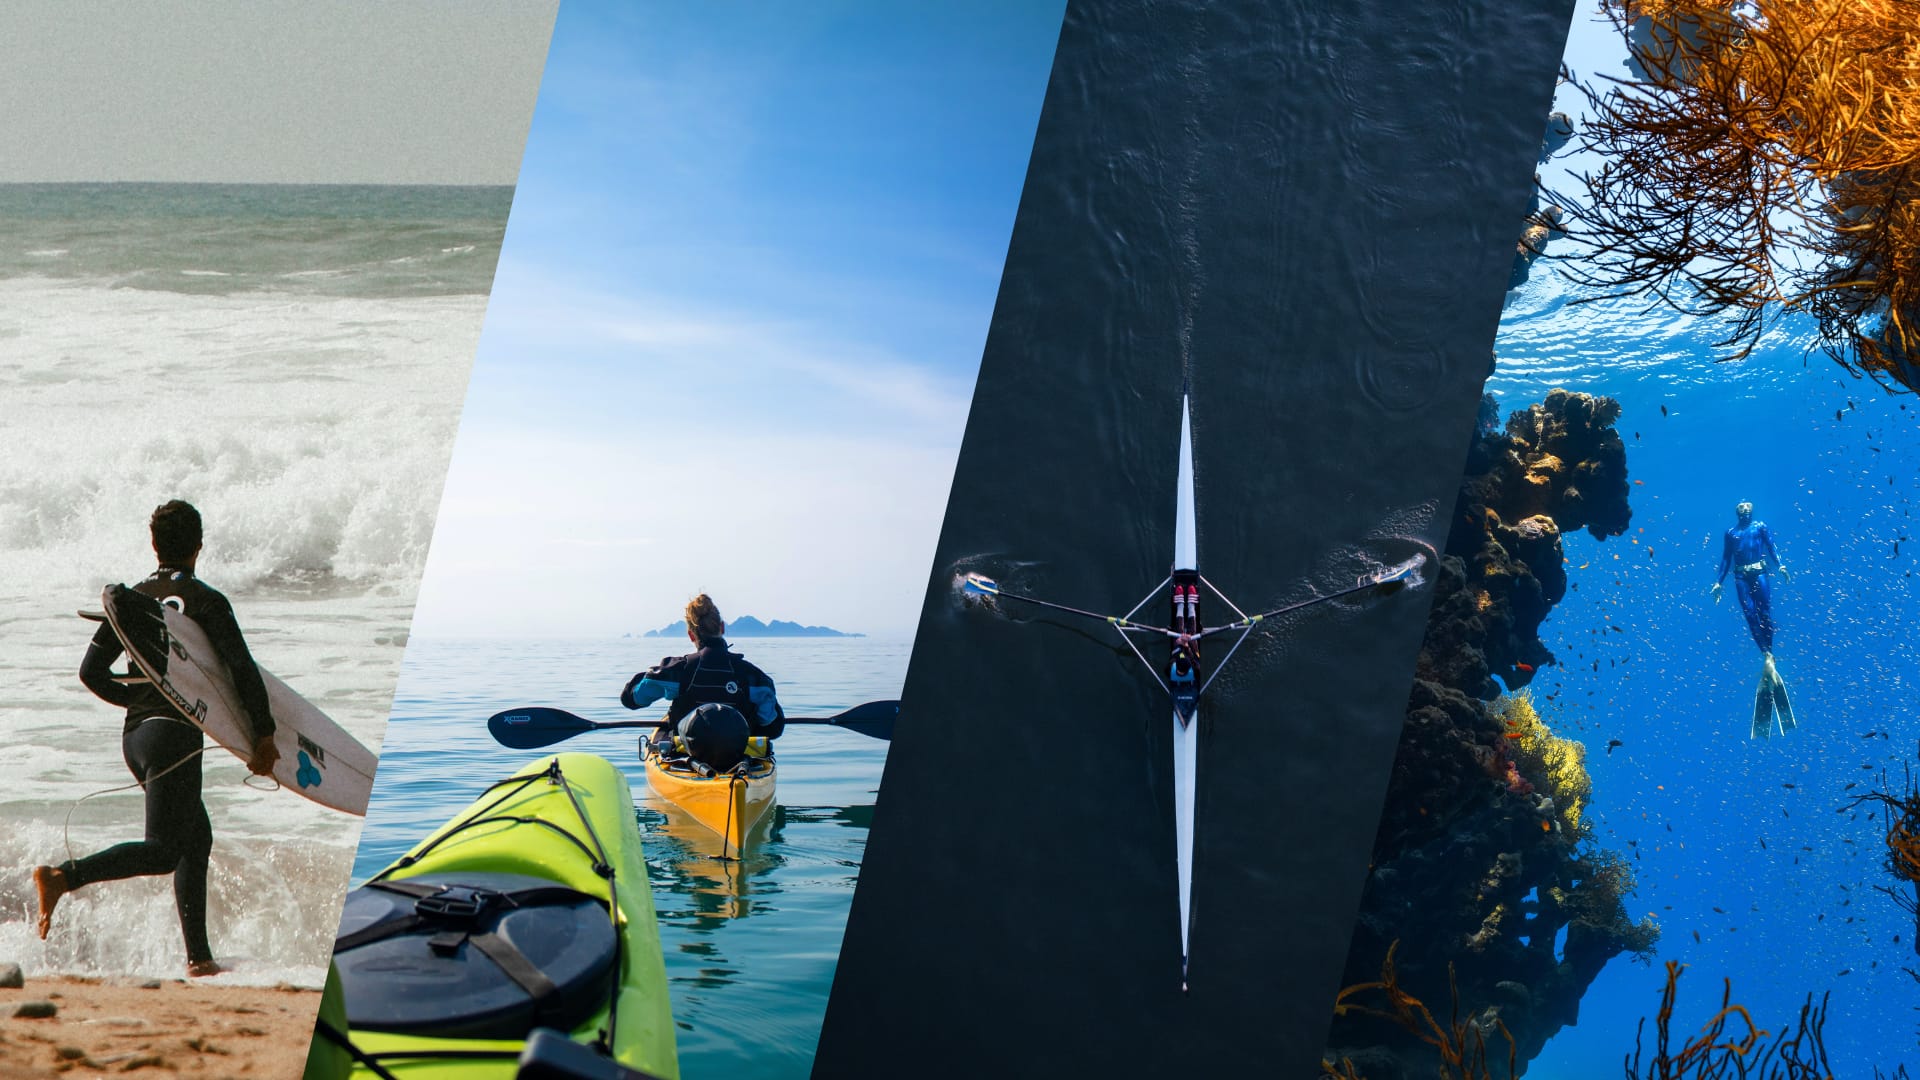 Quatre photos représentent autant de sports nautiques. Le surf, le canoë, l'aviron et la plongée sous marine.